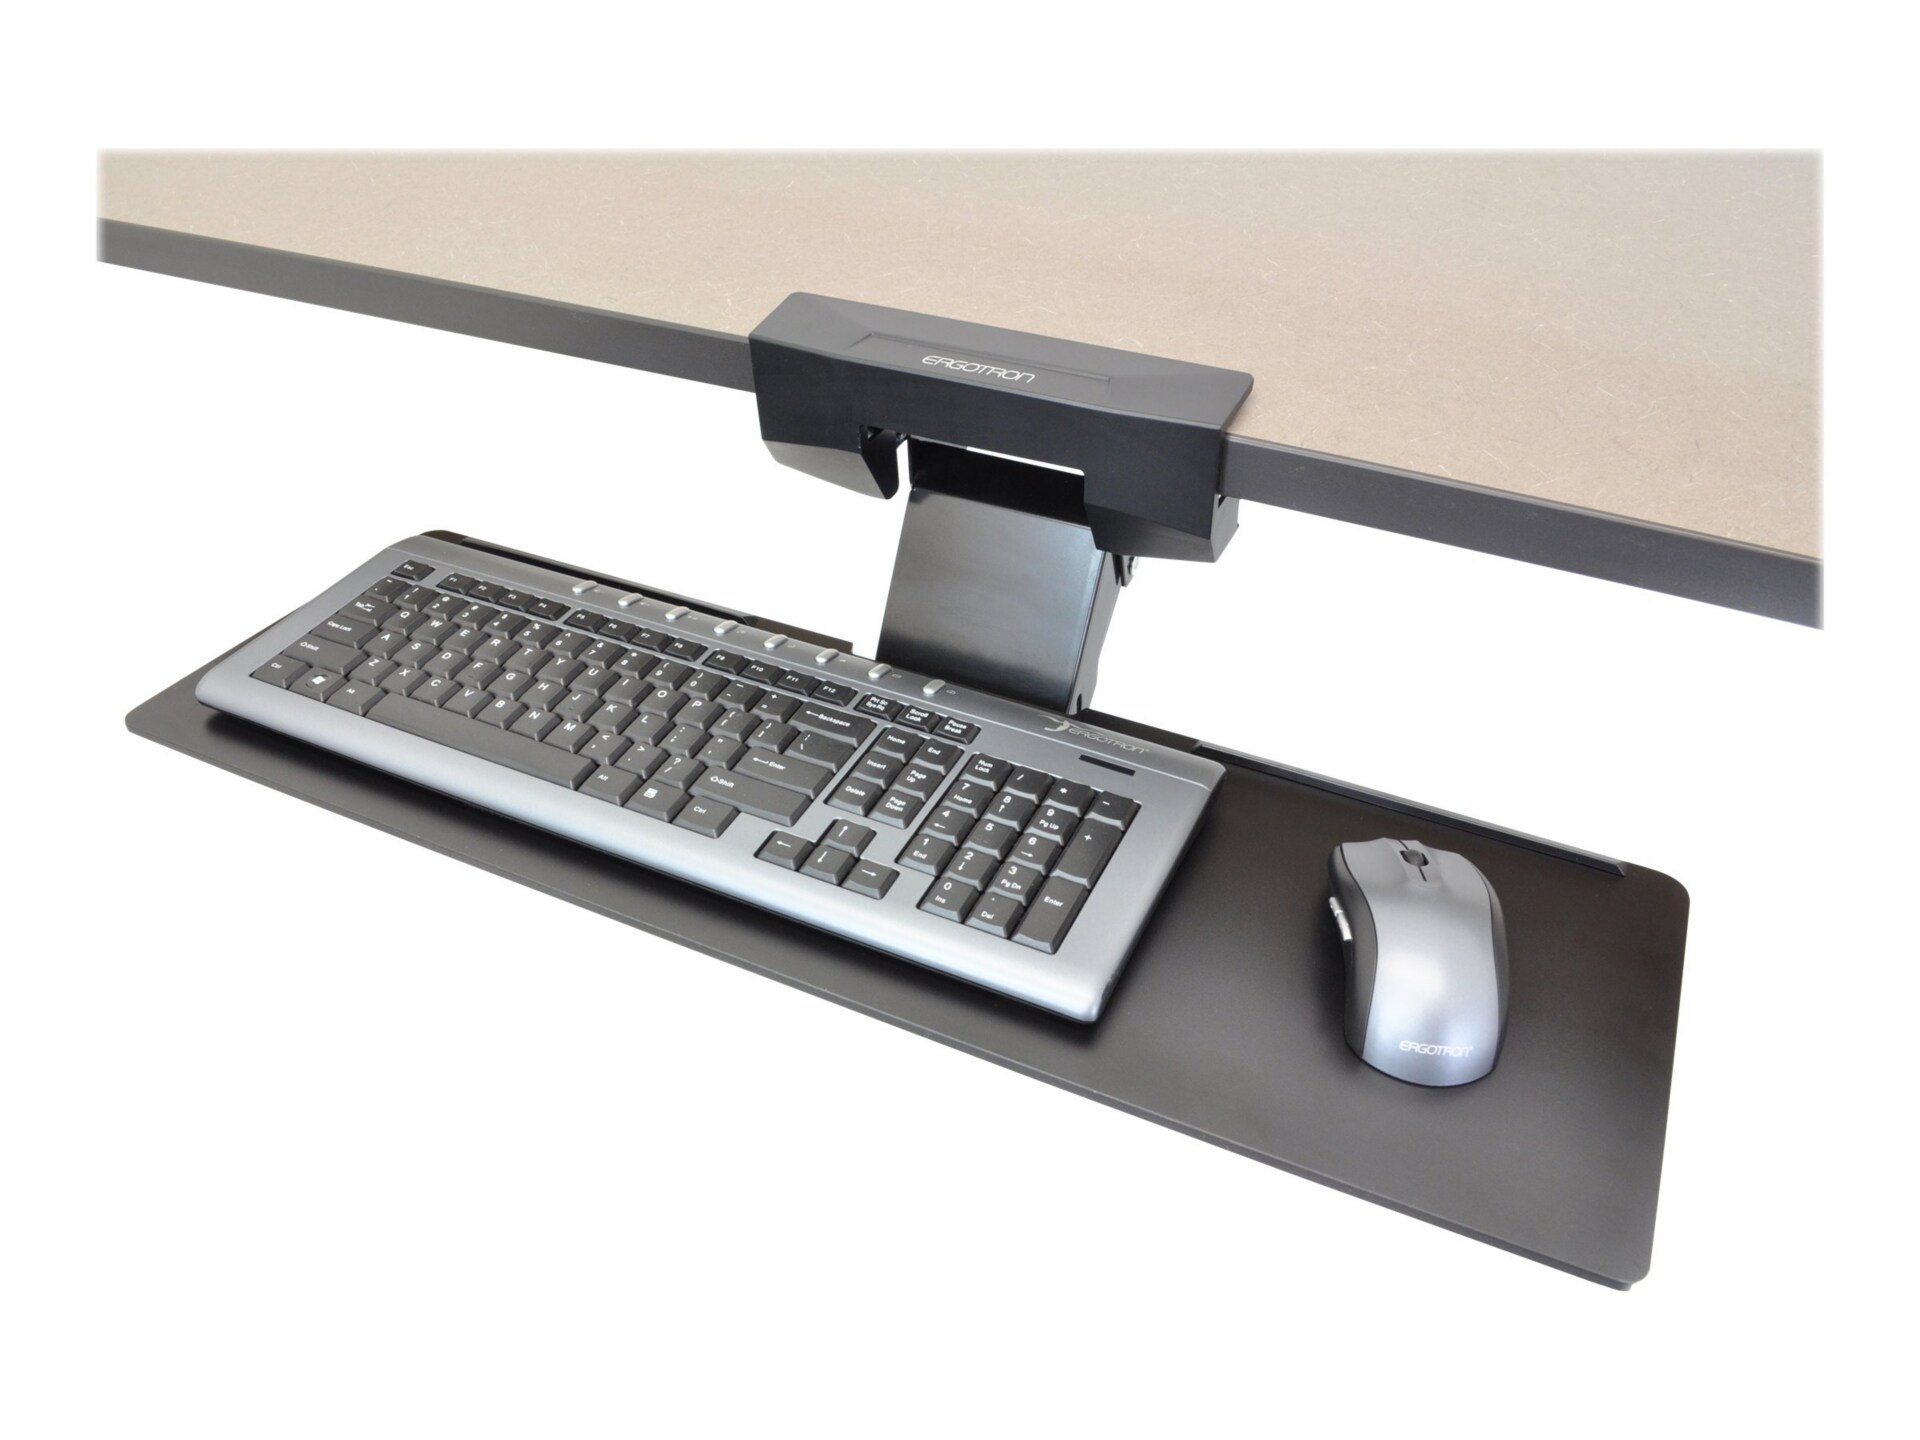 Ergotron Neo-Flex keyboard/mouse arm mount tray